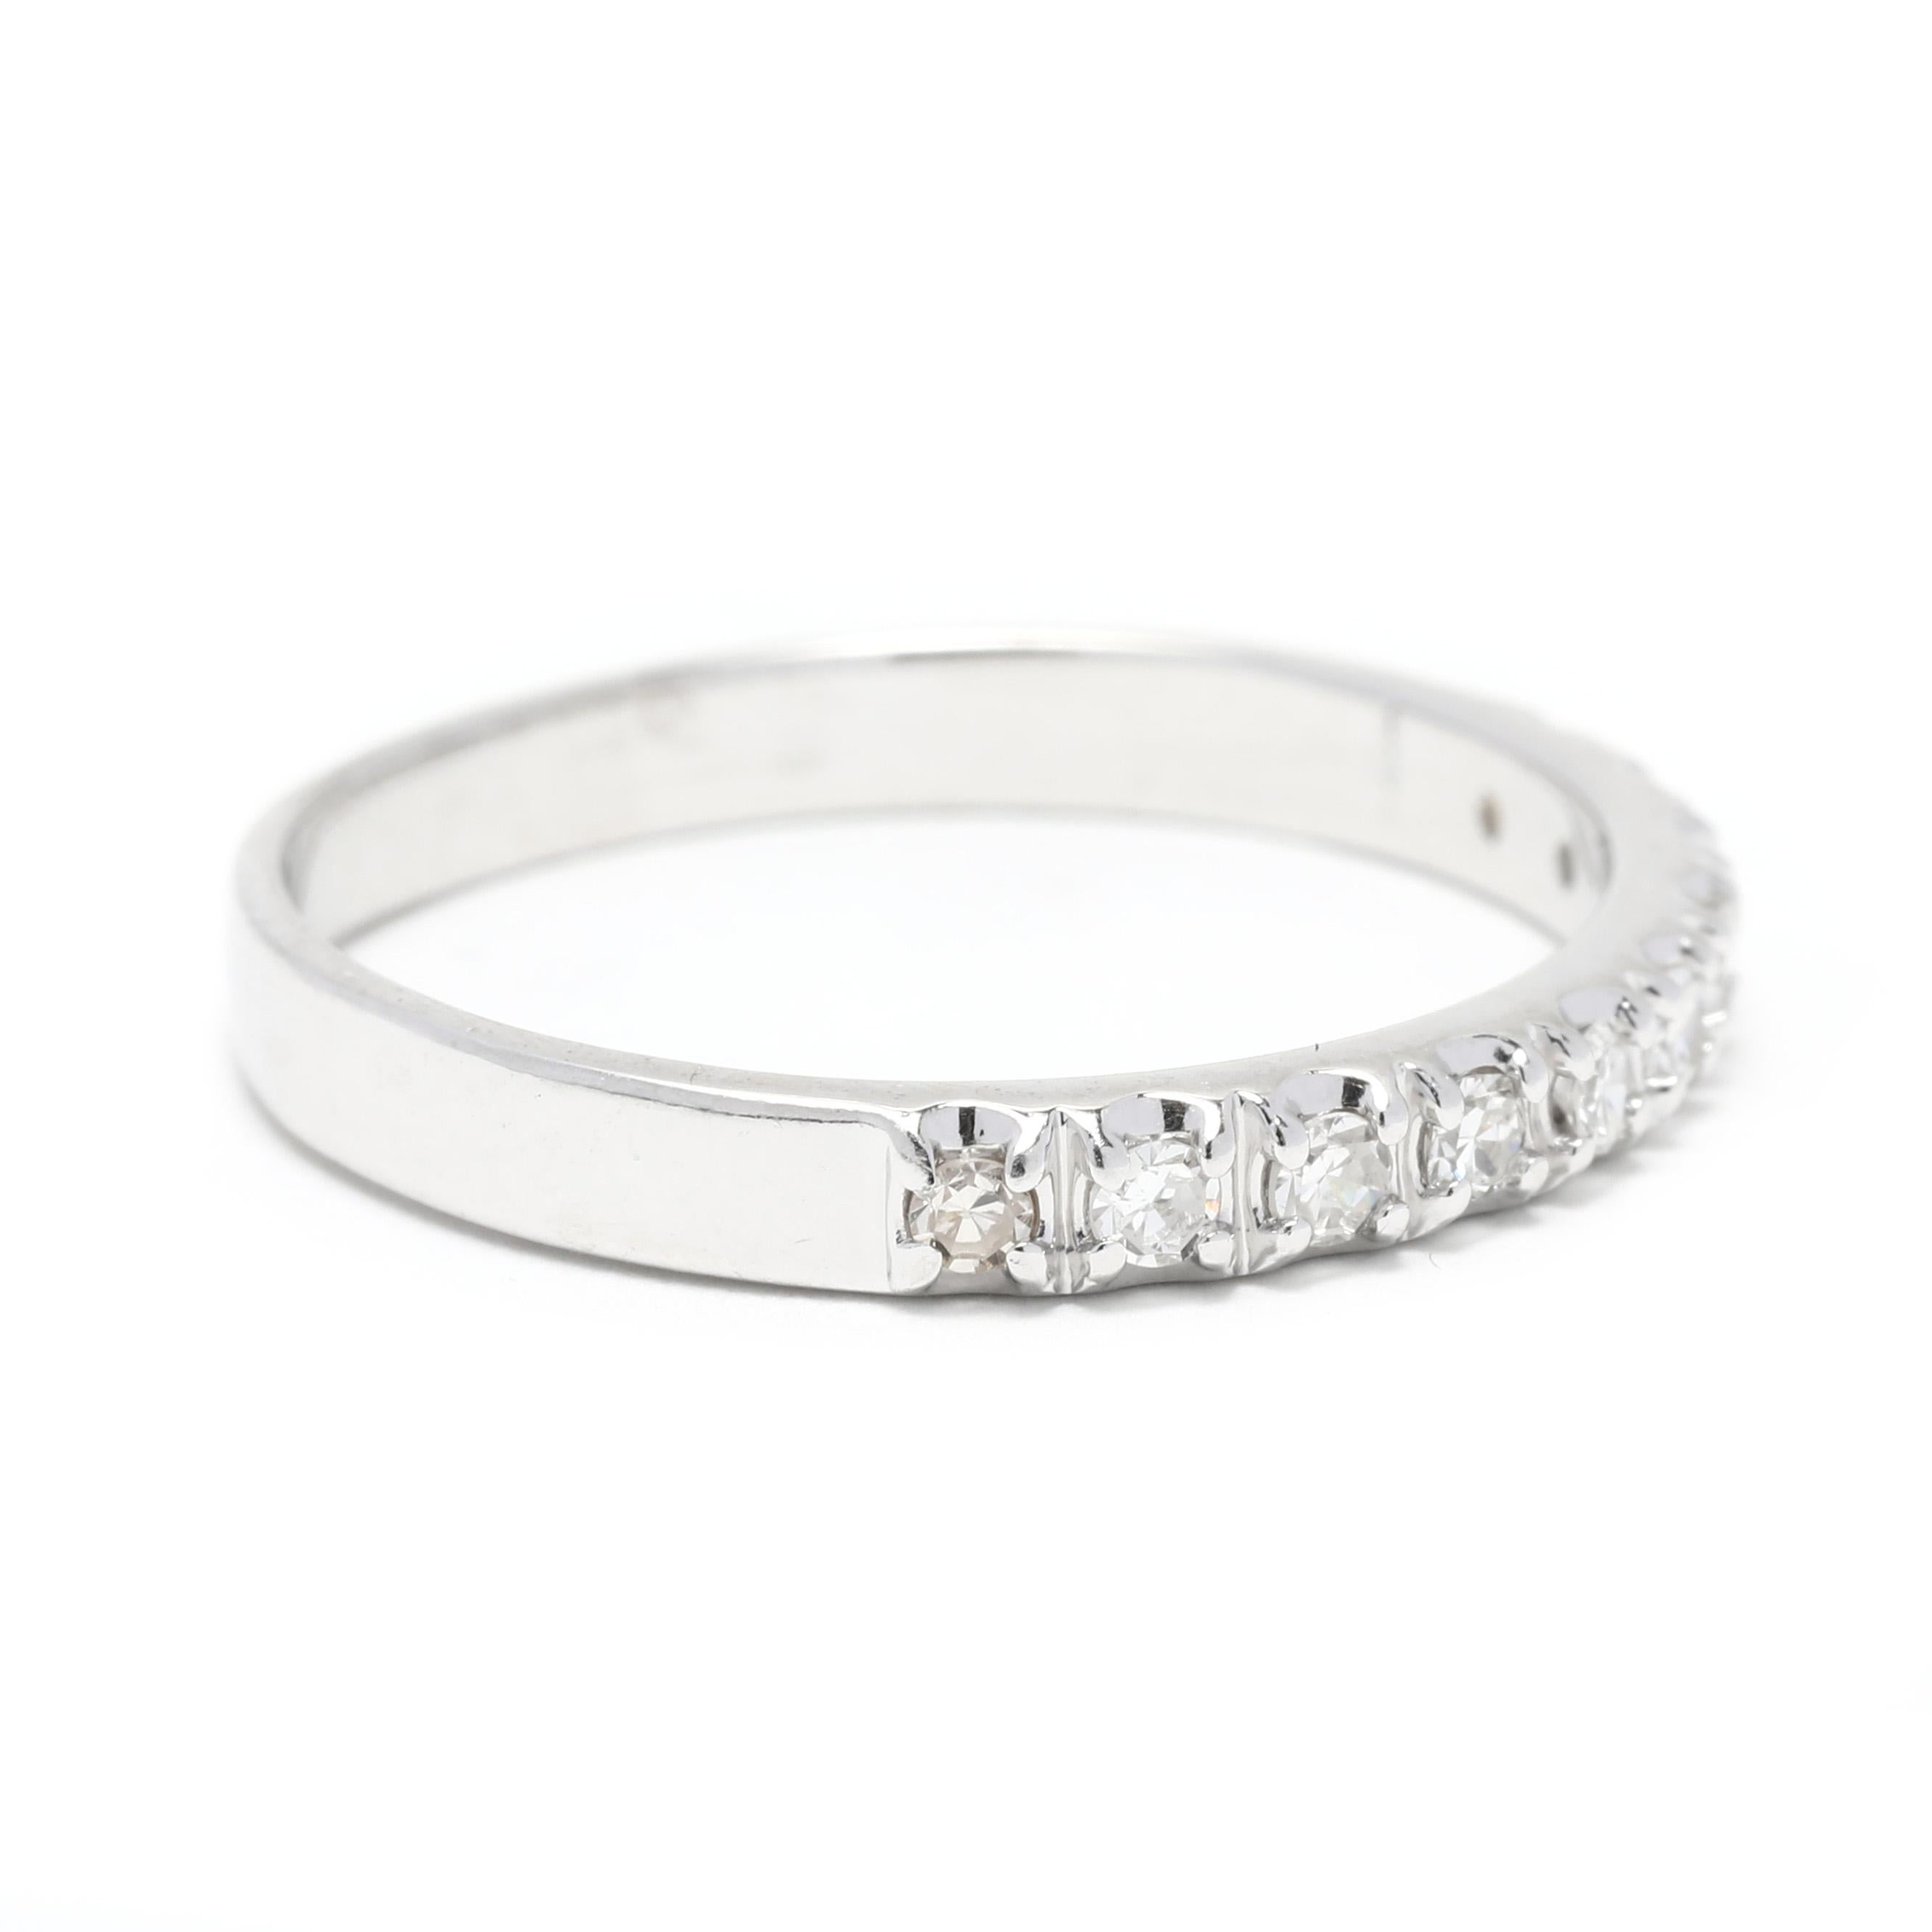 Dieser elegante 0,15-karätige Diamant-Hochzeitsring ist die perfekte Möglichkeit, Ihrem Look einen Hauch von Glanz zu verleihen. Dieses zeitlose Design aus 14-karätigem Weißgold zeichnet sich durch eine Reihe französisch gefasster Diamanten aus, die